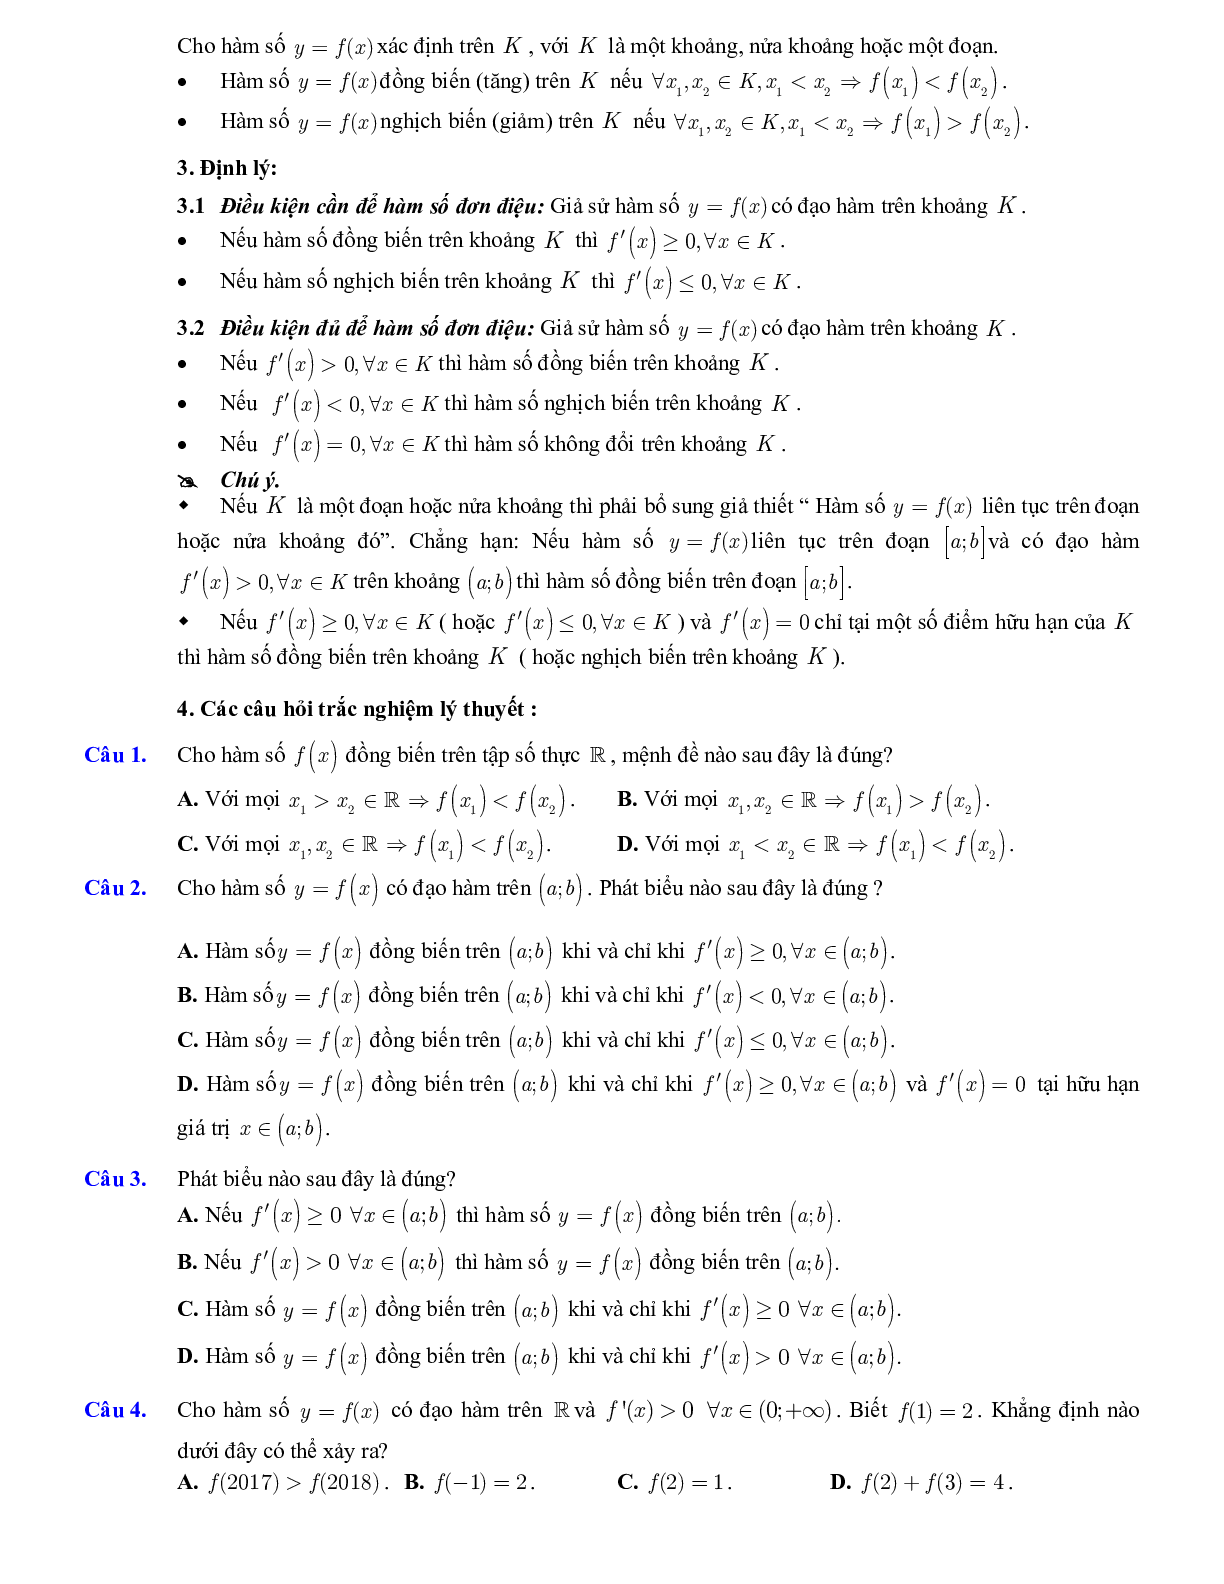 Lý thuyết và bài tập xét tính đơn điệu của hàm số ôn thi THPTQG (trang 2)